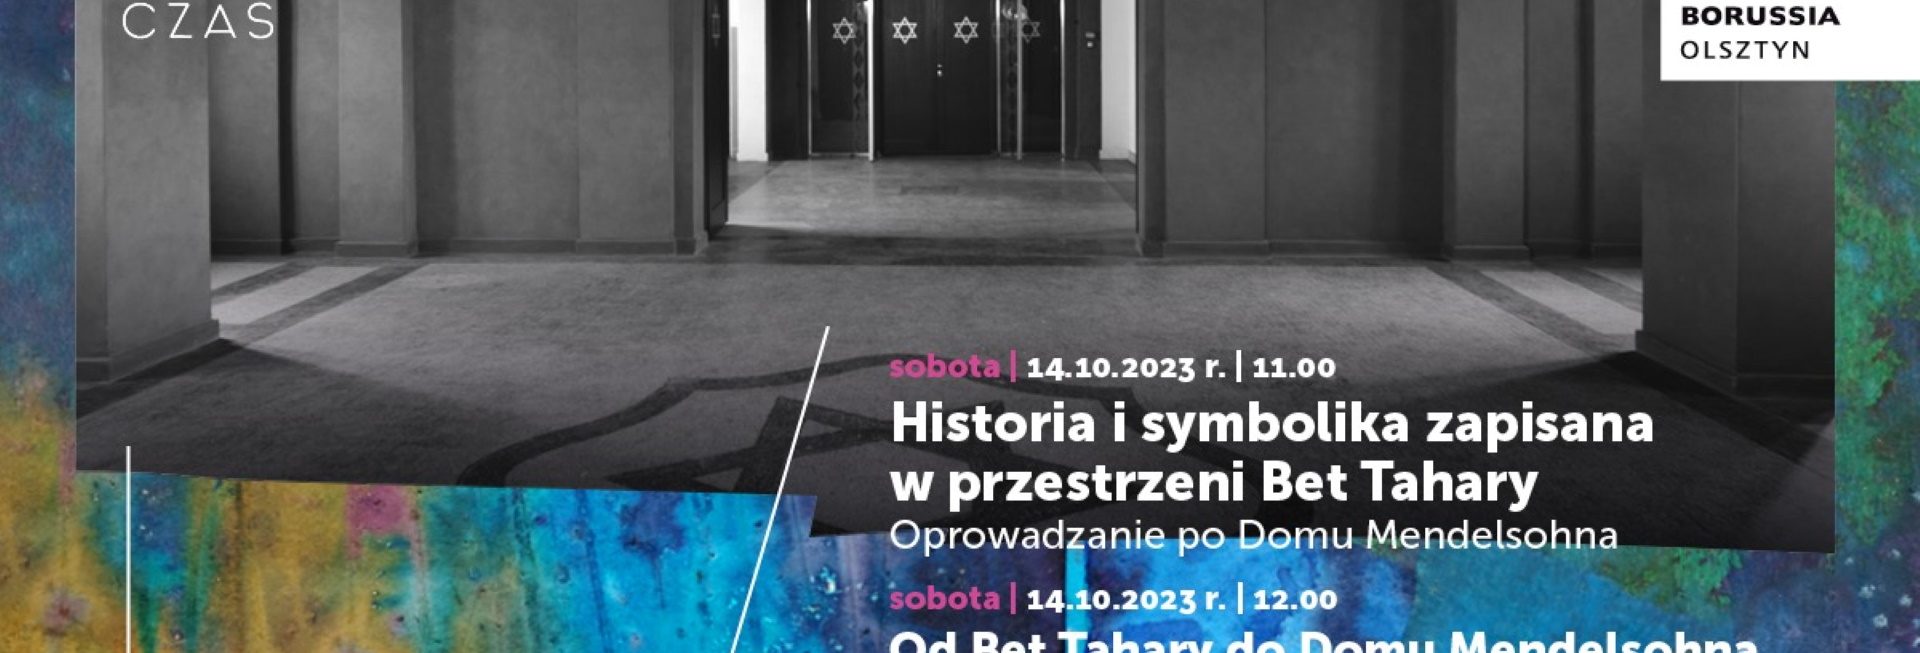 Plakat zapraszający w sobotę 14 października 2023 r. do Olsztyna na spotkanie poświęcone historii „Od Bet Tahary do Domu Mendelsohna” Olsztyn 2023.